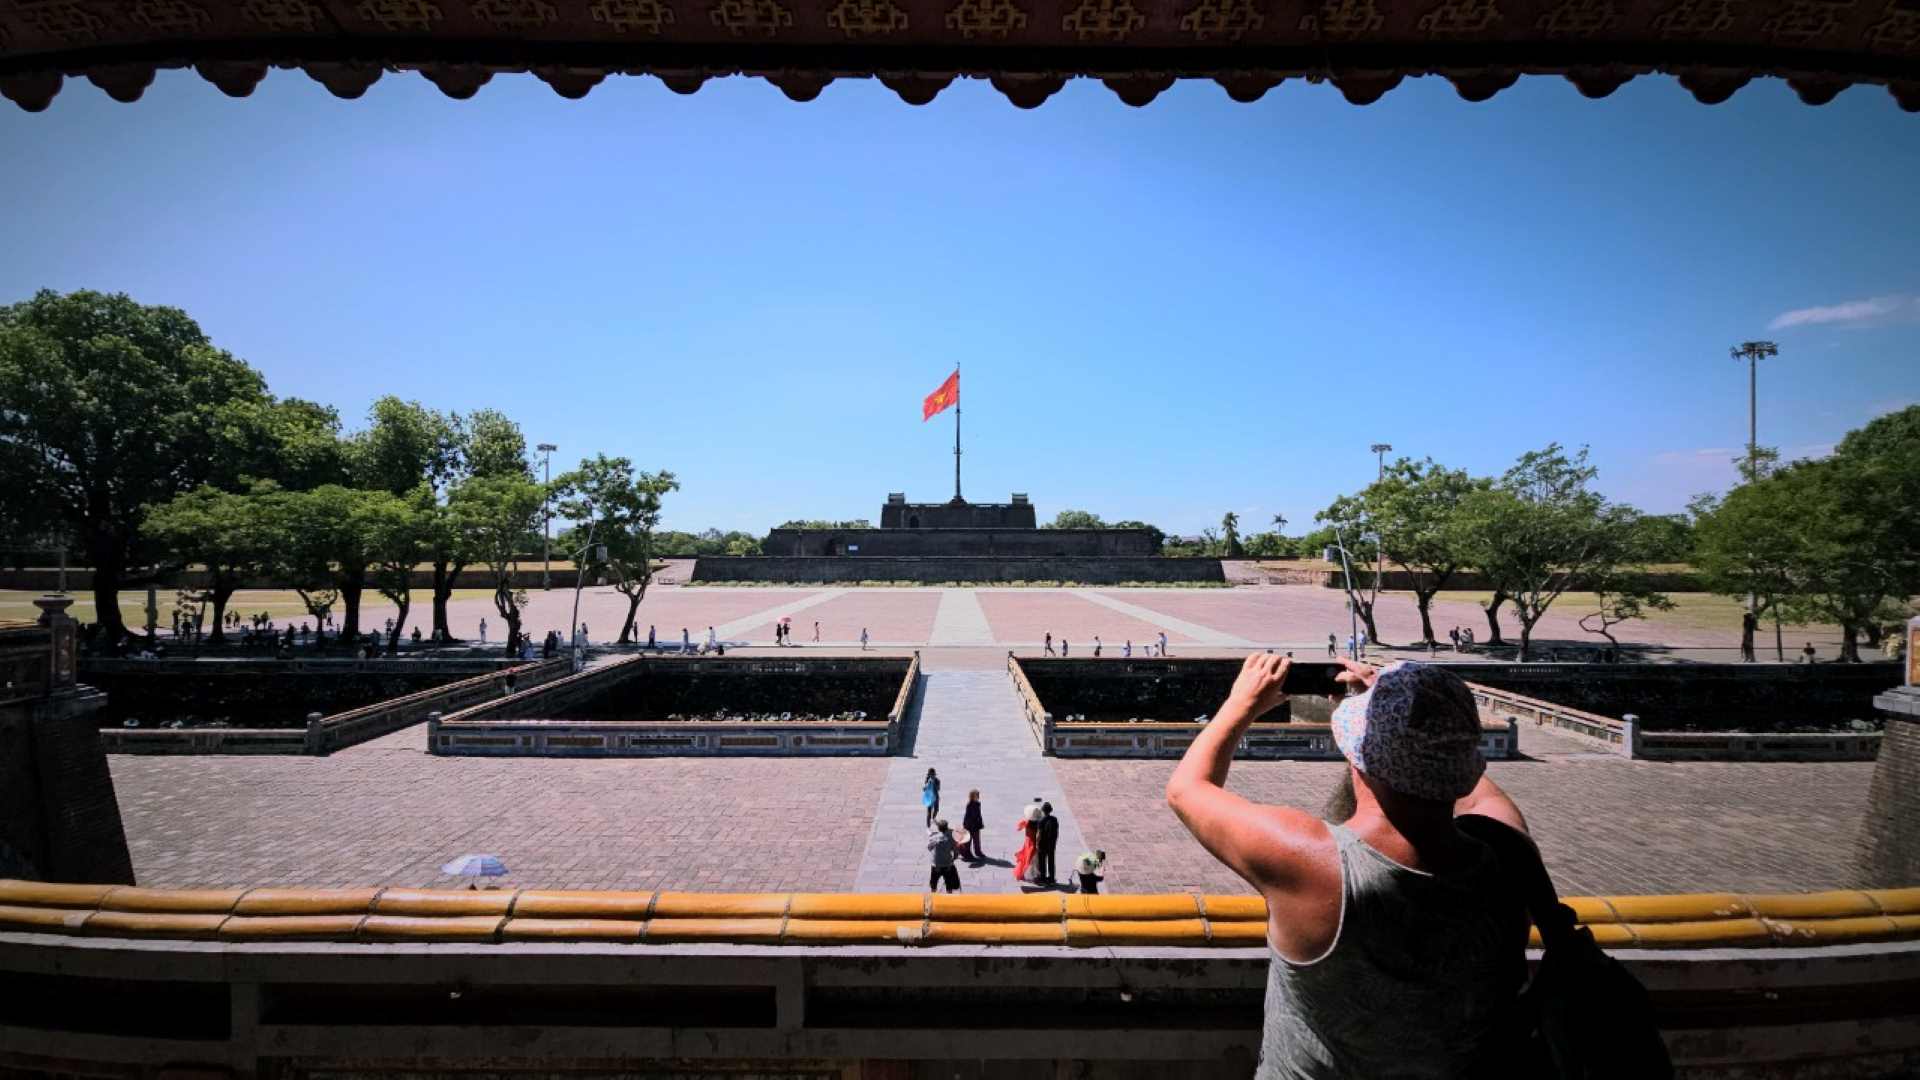 Từ trước đến nay, Kinh thành Huế có tổng 13 cửa ra vào thành, trong đó gồm 10 cửa đường bộ, 2 cửa đường thủy và 1 cửa phụ. Tất cả đều được xây dựng từ thời vua Gia Long (phần mái vòm), đến thời vua Minh Mạng đã hoàn thiện vọng lâu phía trên. 